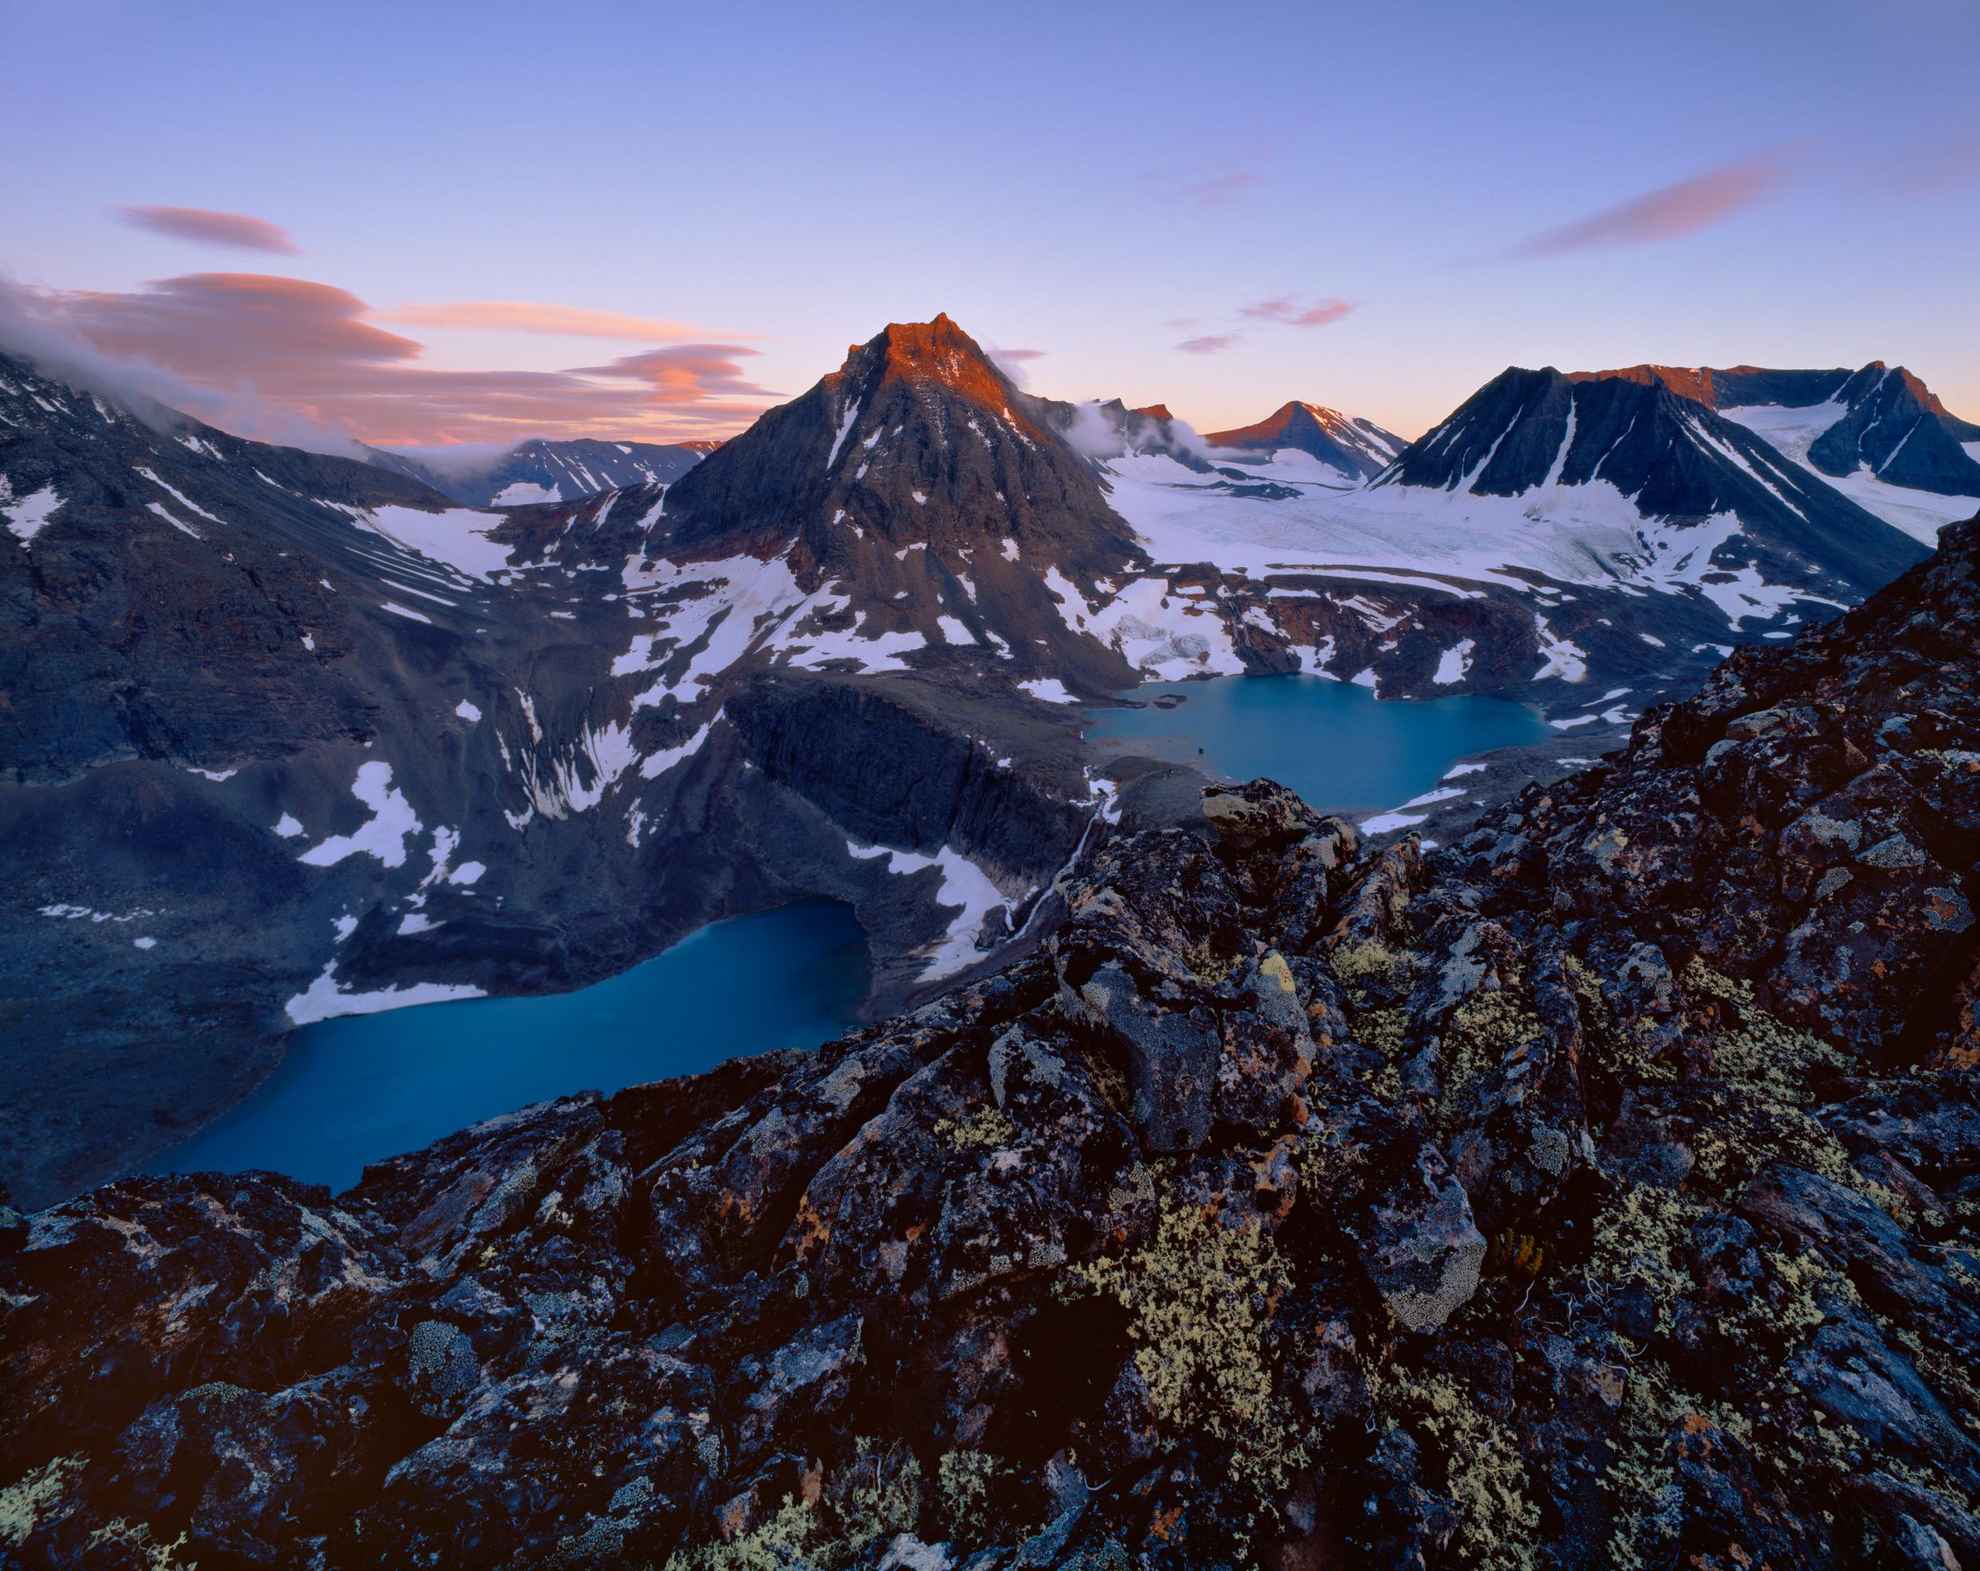 Luchtfoto van het Scandes-gebergte met kale rotsen vermengd met gletsjers.